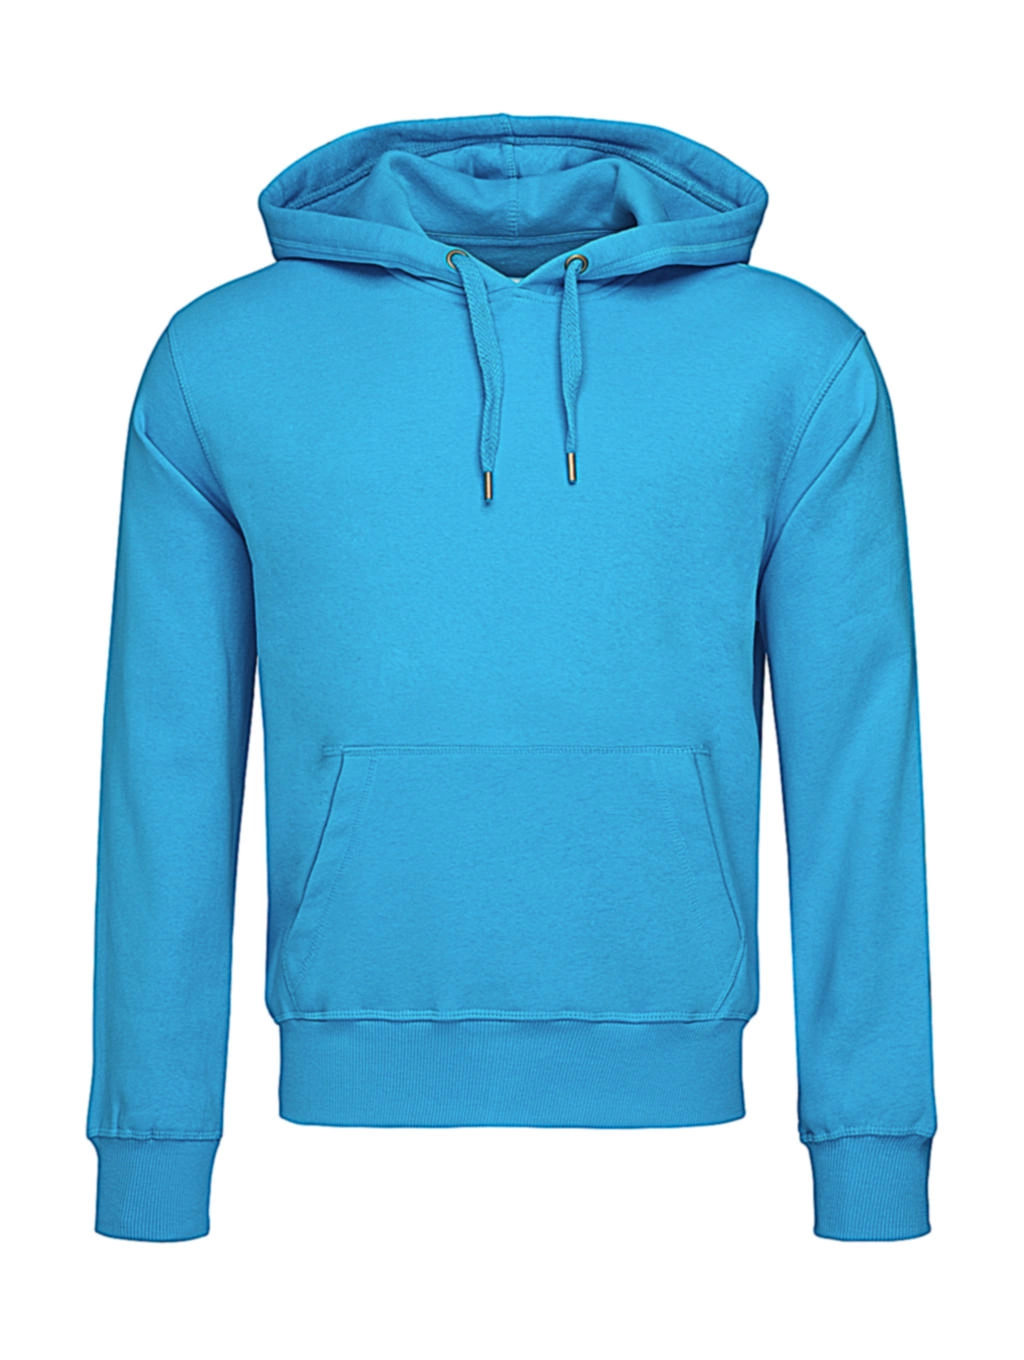 Unisex Sweat Hoodie Select zum Besticken und Bedrucken in der Farbe Hawaii Blue mit Ihren Logo, Schriftzug oder Motiv.